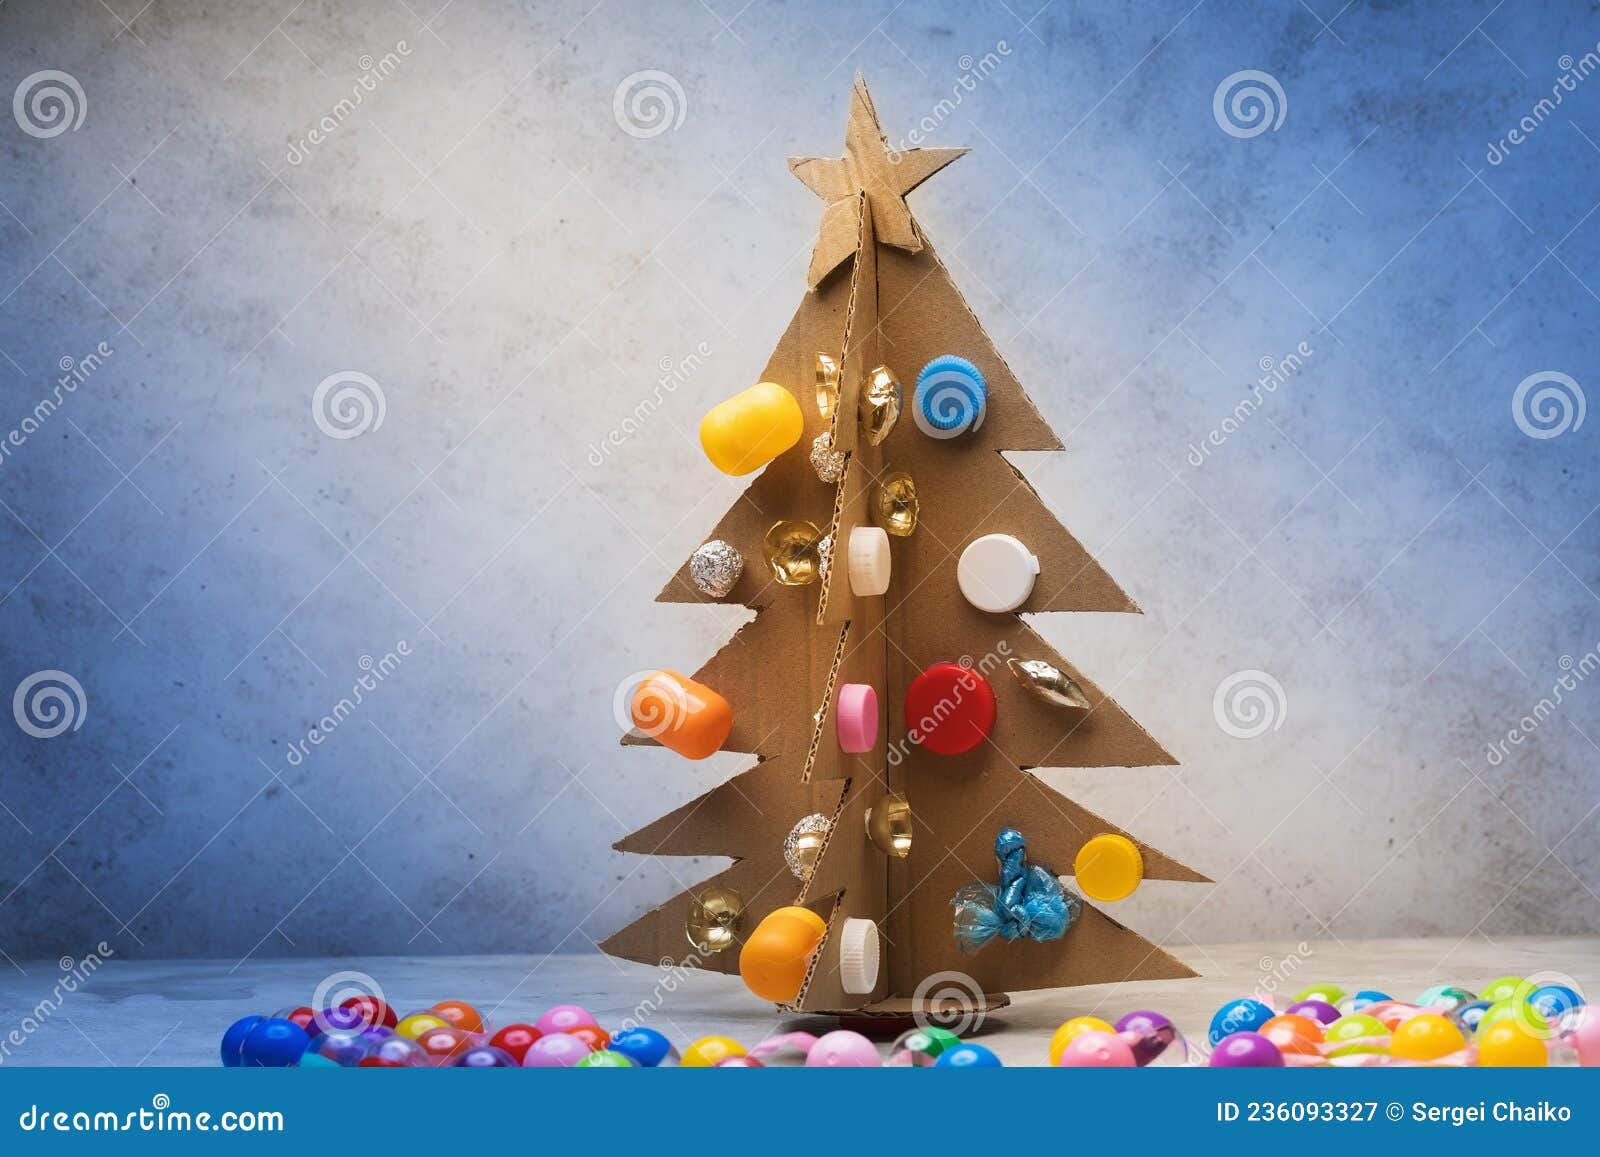 árvore De Natal Feita De Papelão Decorada Com Materiais Reciclados Em Fundo  Abstrato Imagem de Stock - Imagem de simplicidade, ecologia: 236093327